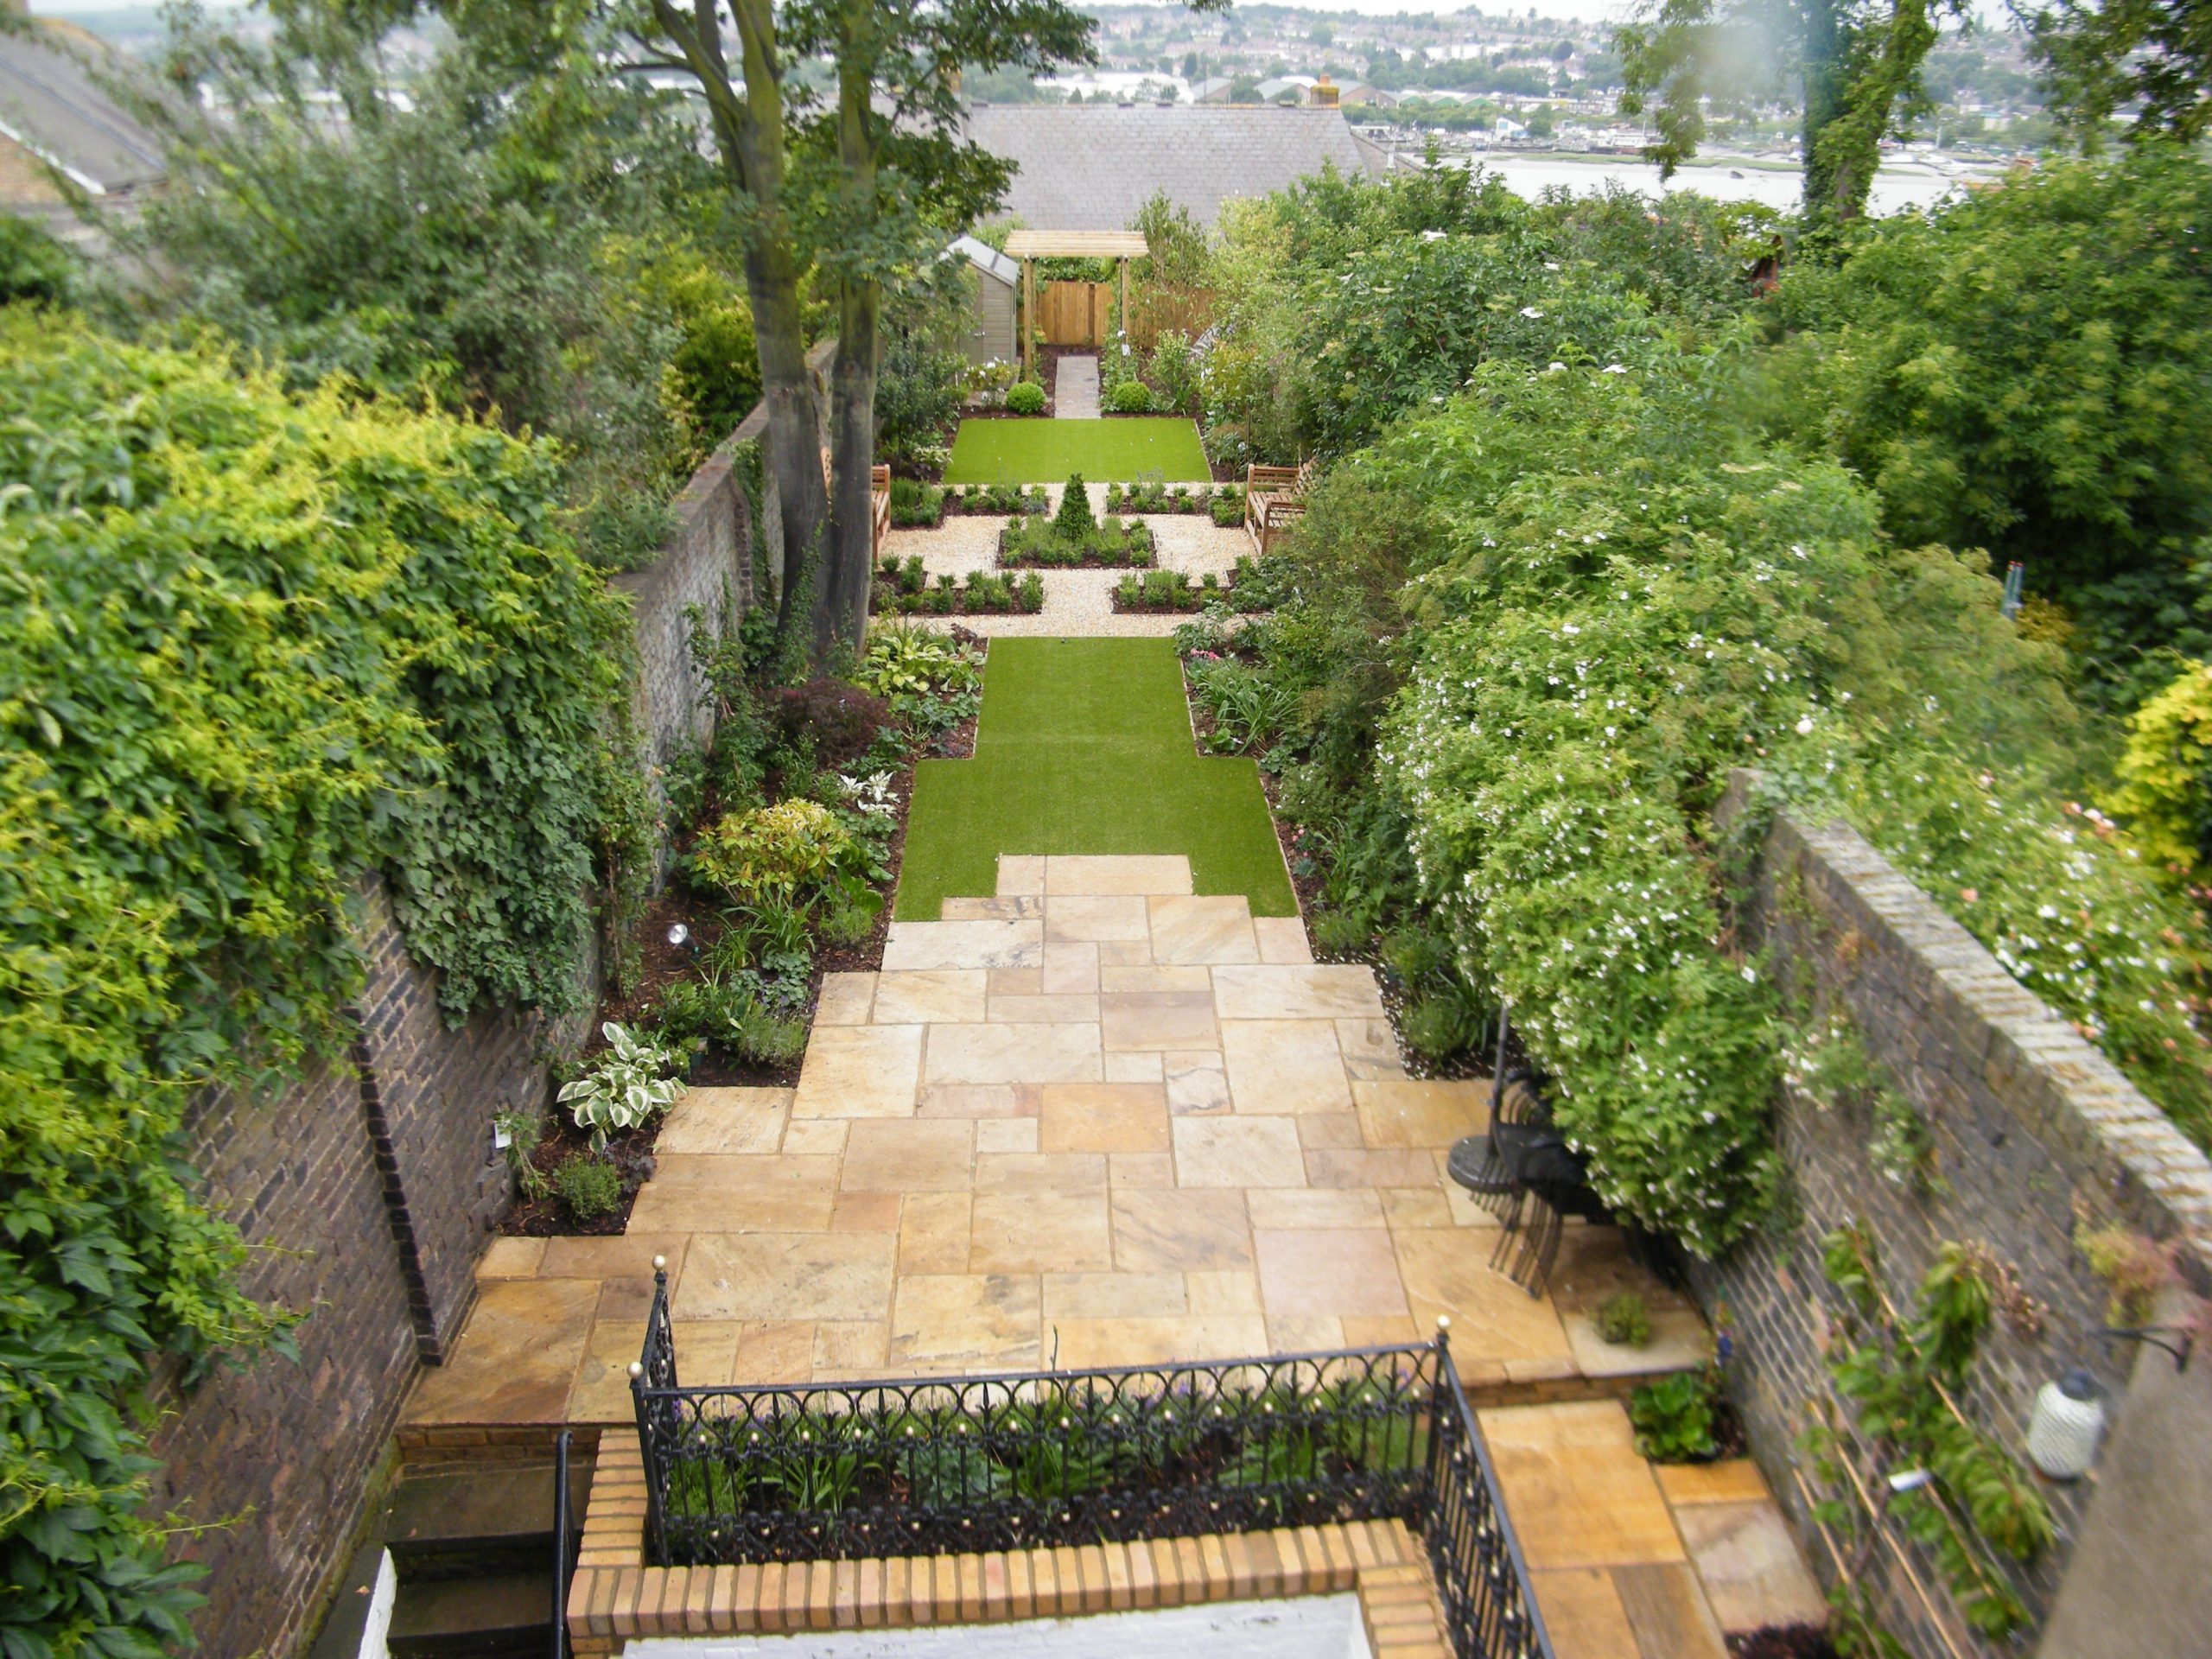 Đơn giản nhưng mẫu thiết kế sân vườn này được nhiều người yêu thích